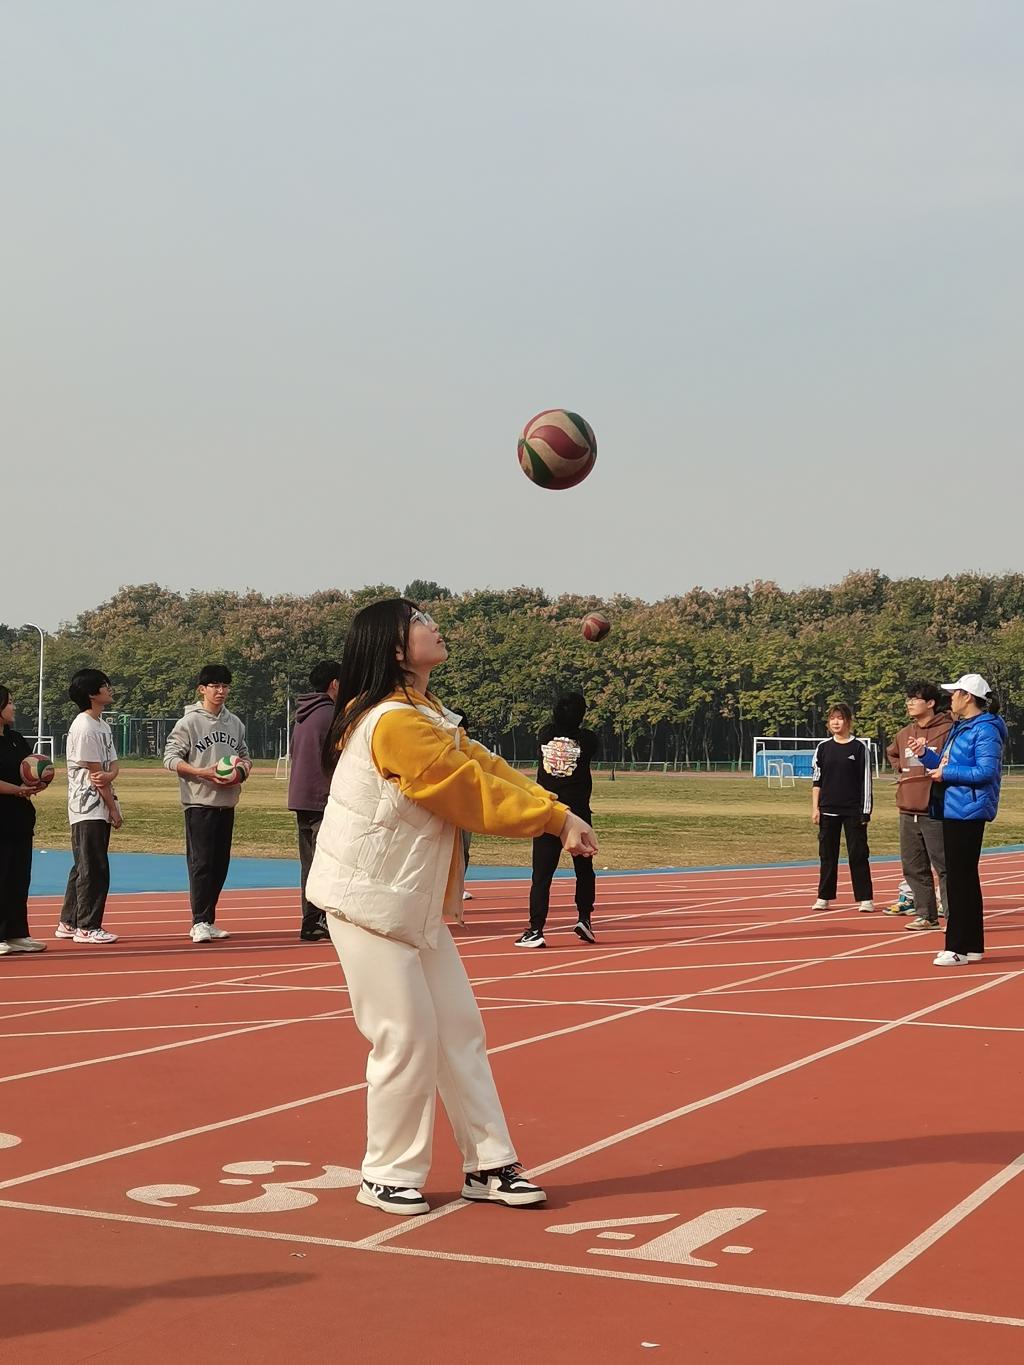 技能比赛,在提高学生对排球运动兴趣的同时也进一步完善了学校的体育